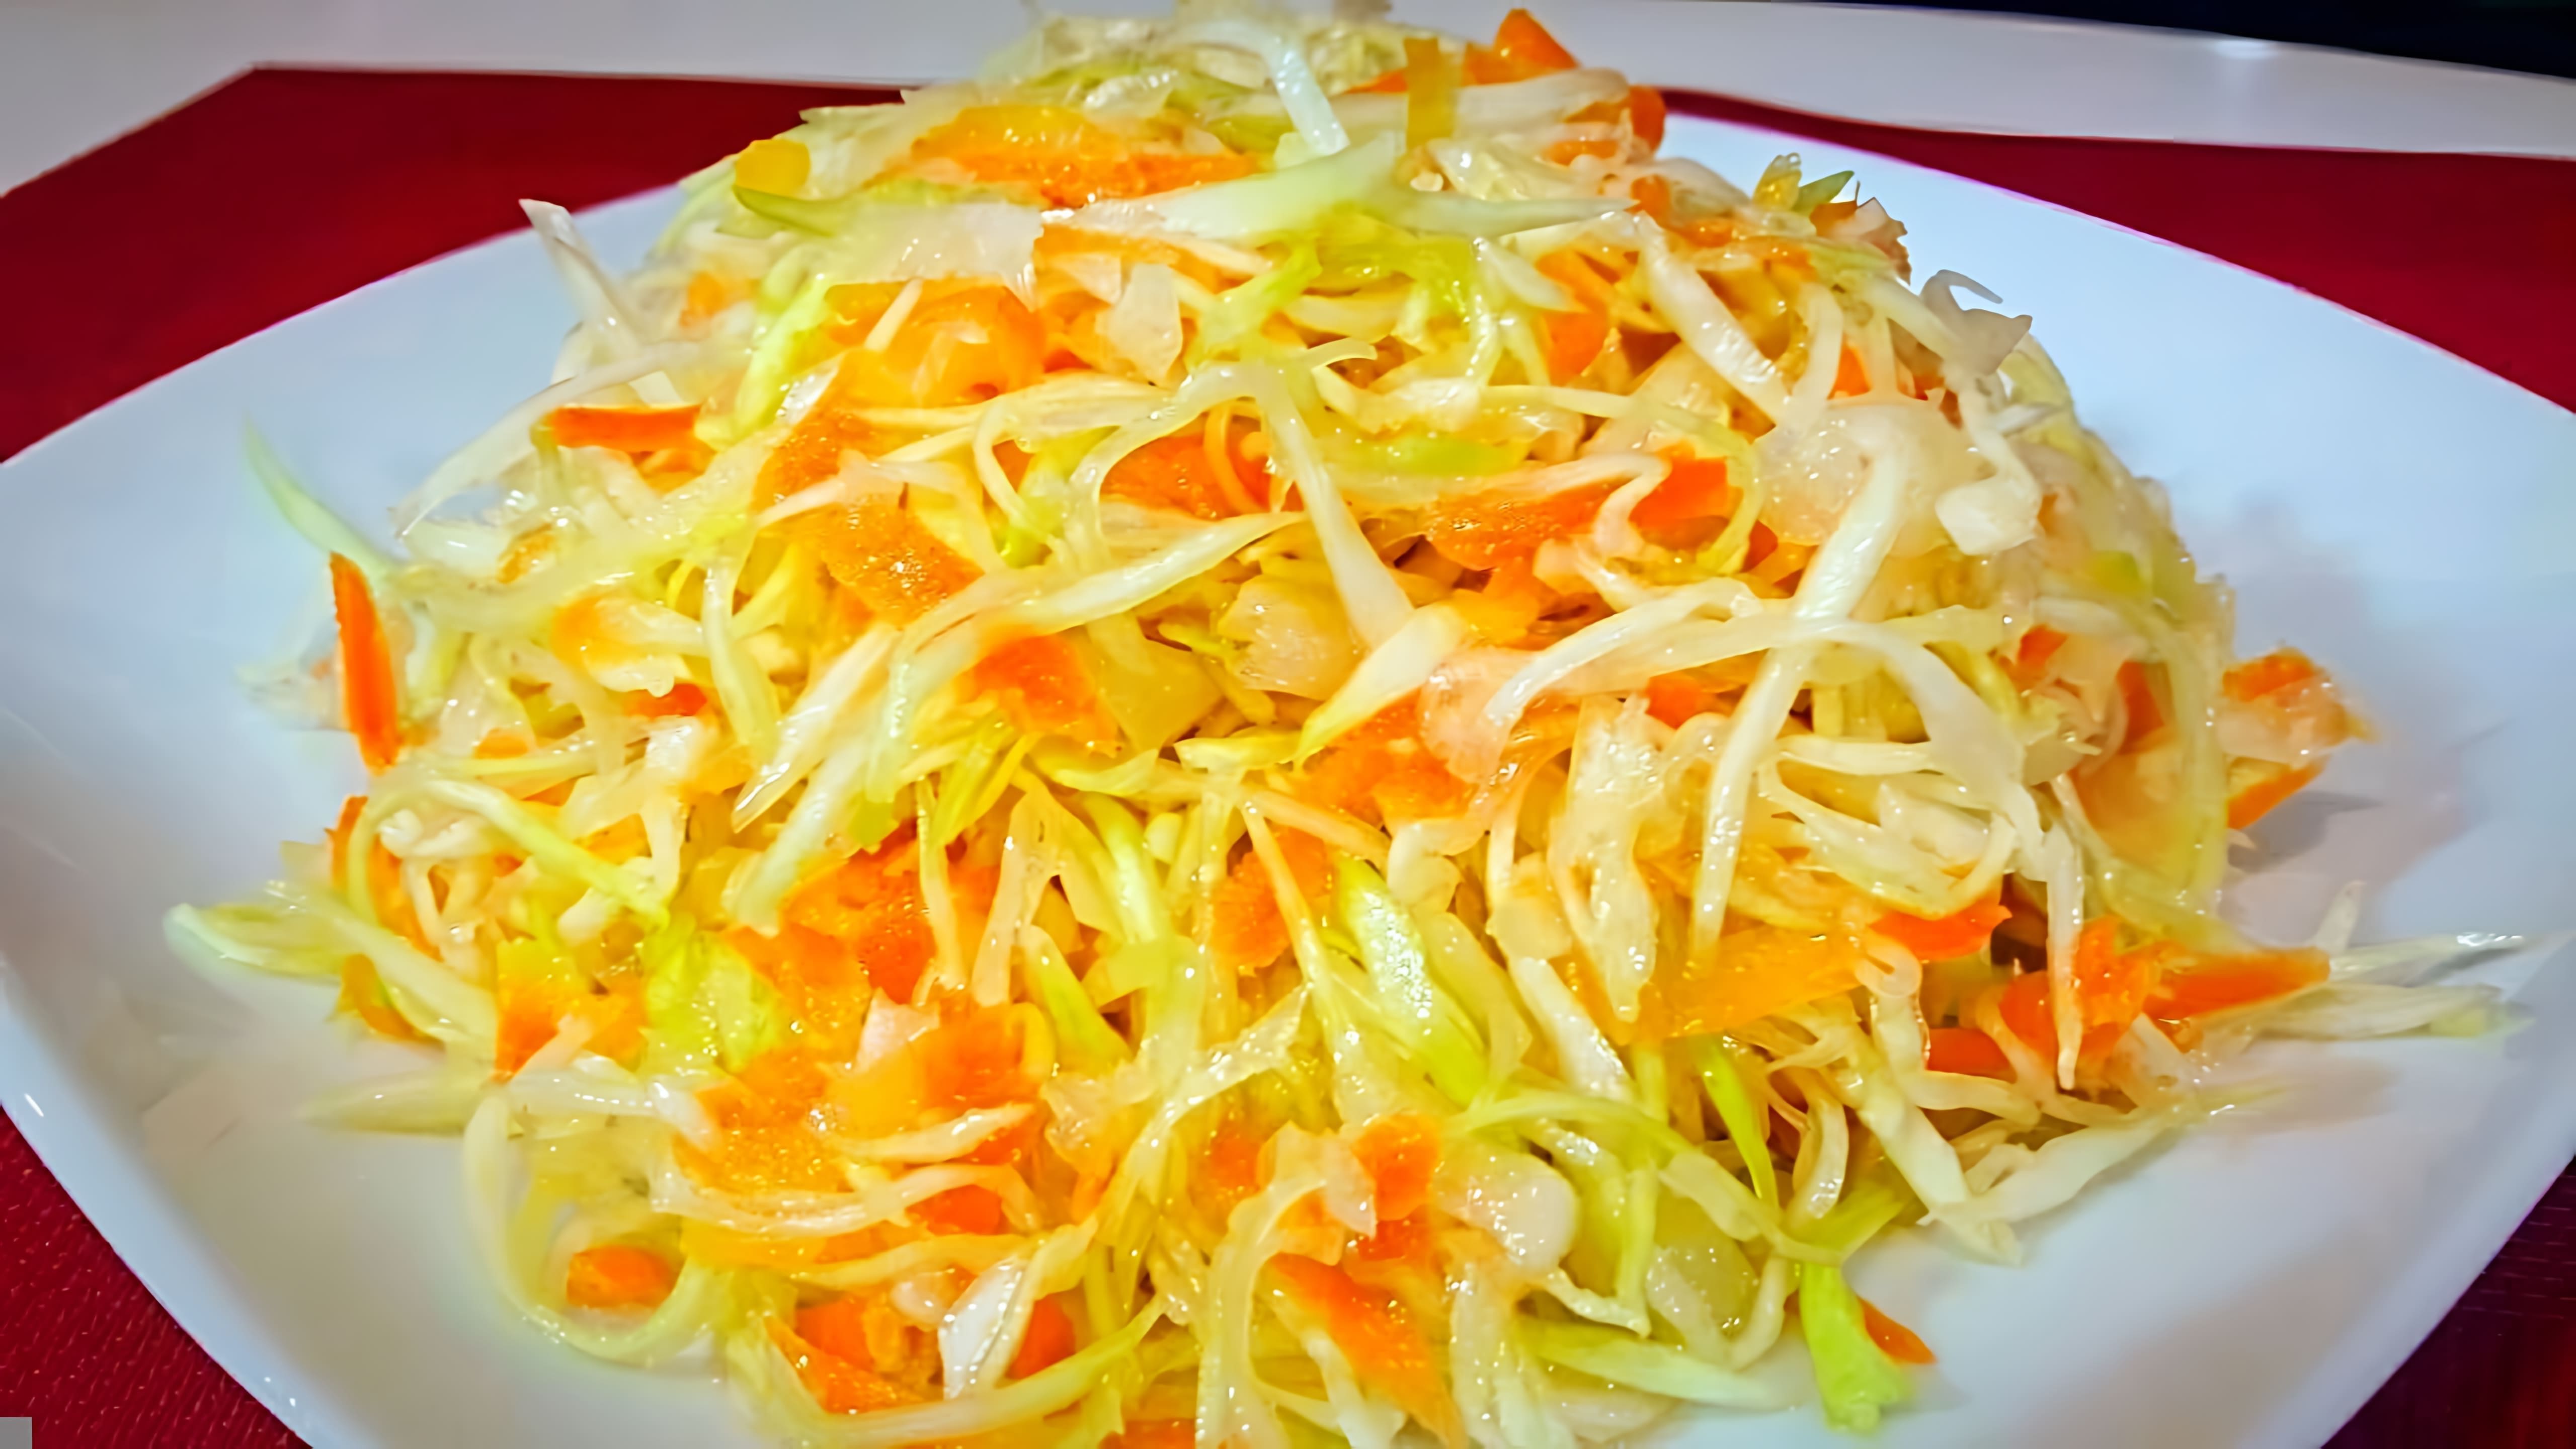 В этом видео демонстрируется процесс приготовления салата из свежей капусты, который получается таким же вкусным, как в столовой